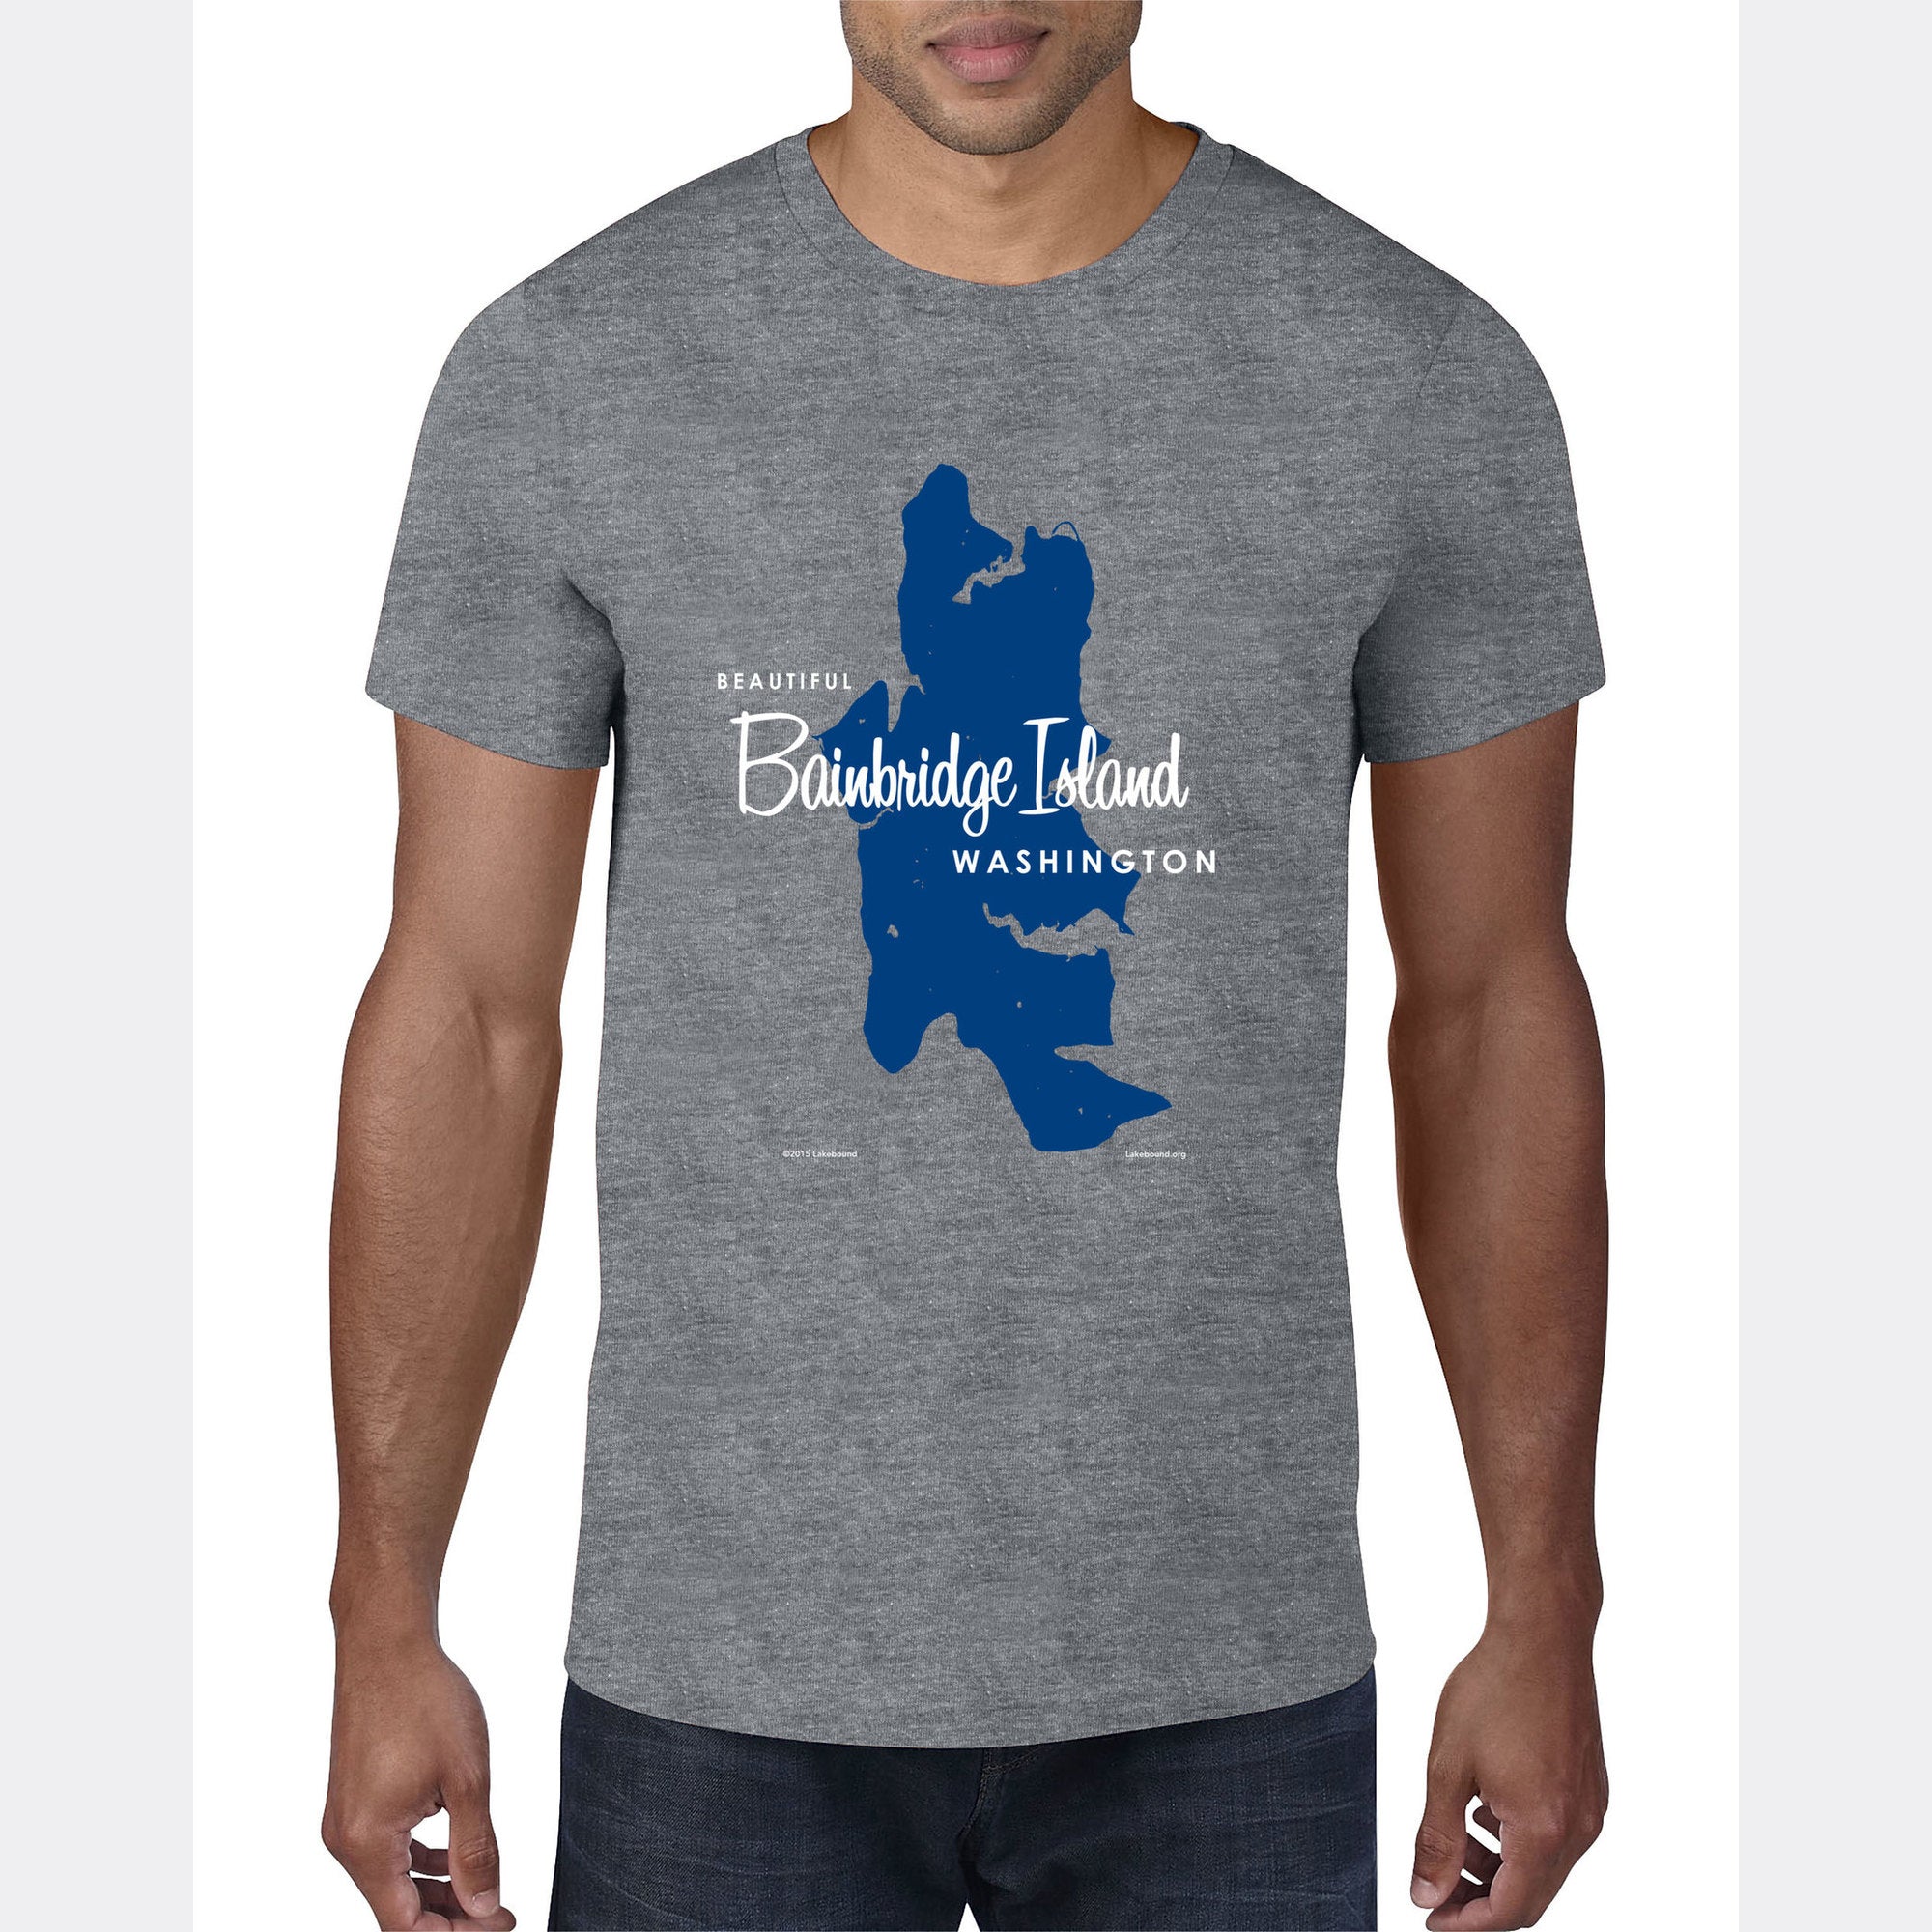 Bainbridge Island Washington, T-Shirt